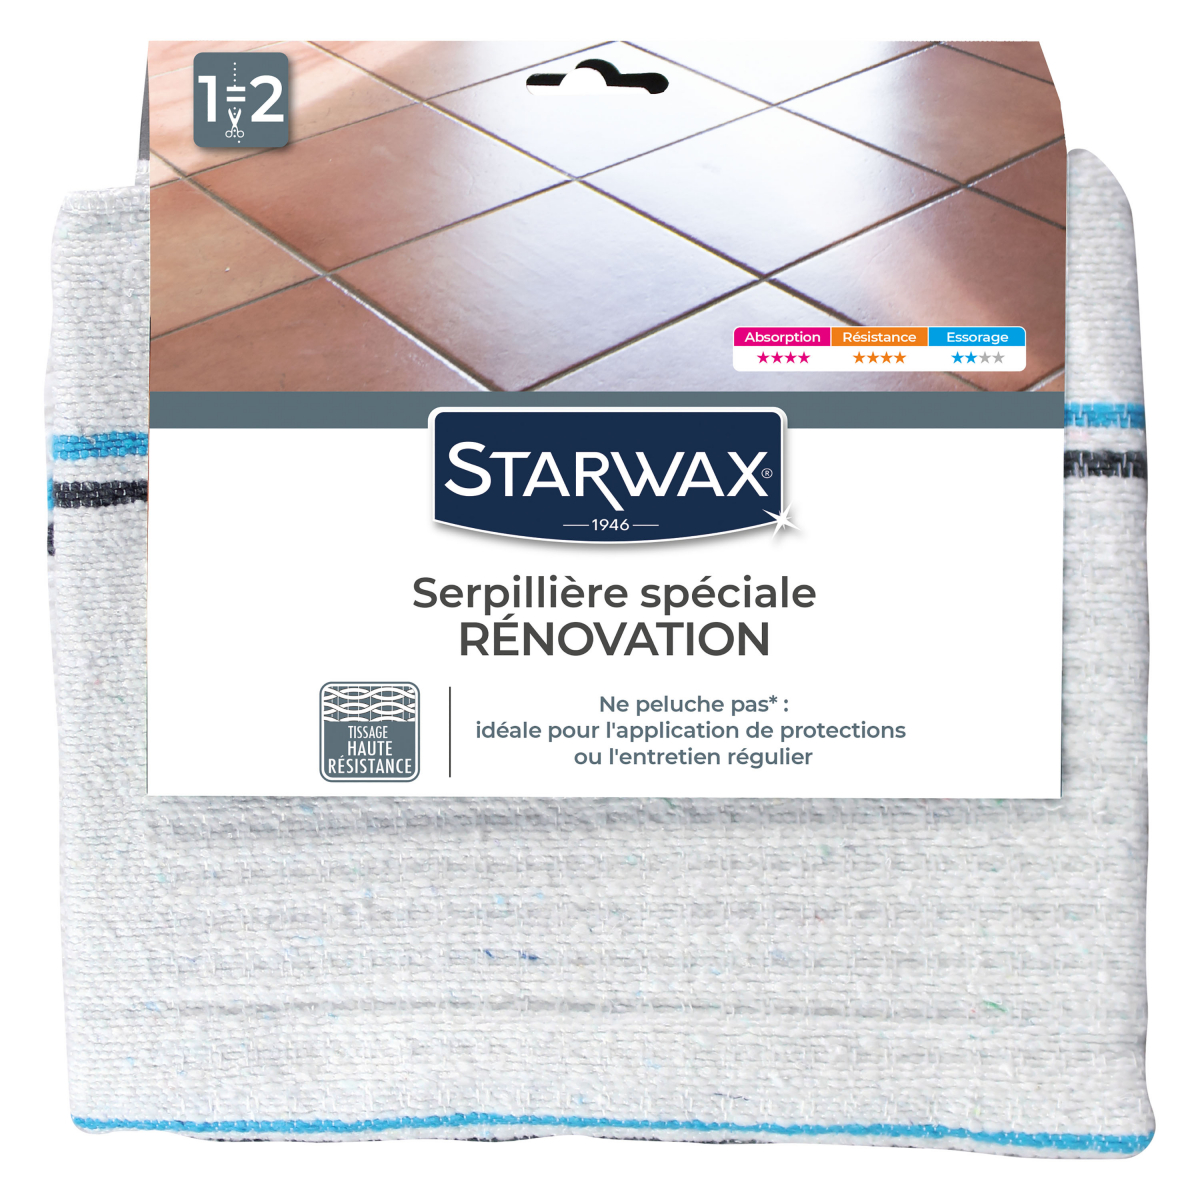 Serpillière gaufrée extra-blanche double pour tous types de sols - Starwax  - 50 x 100 cm Brunel Chimie Dérivés